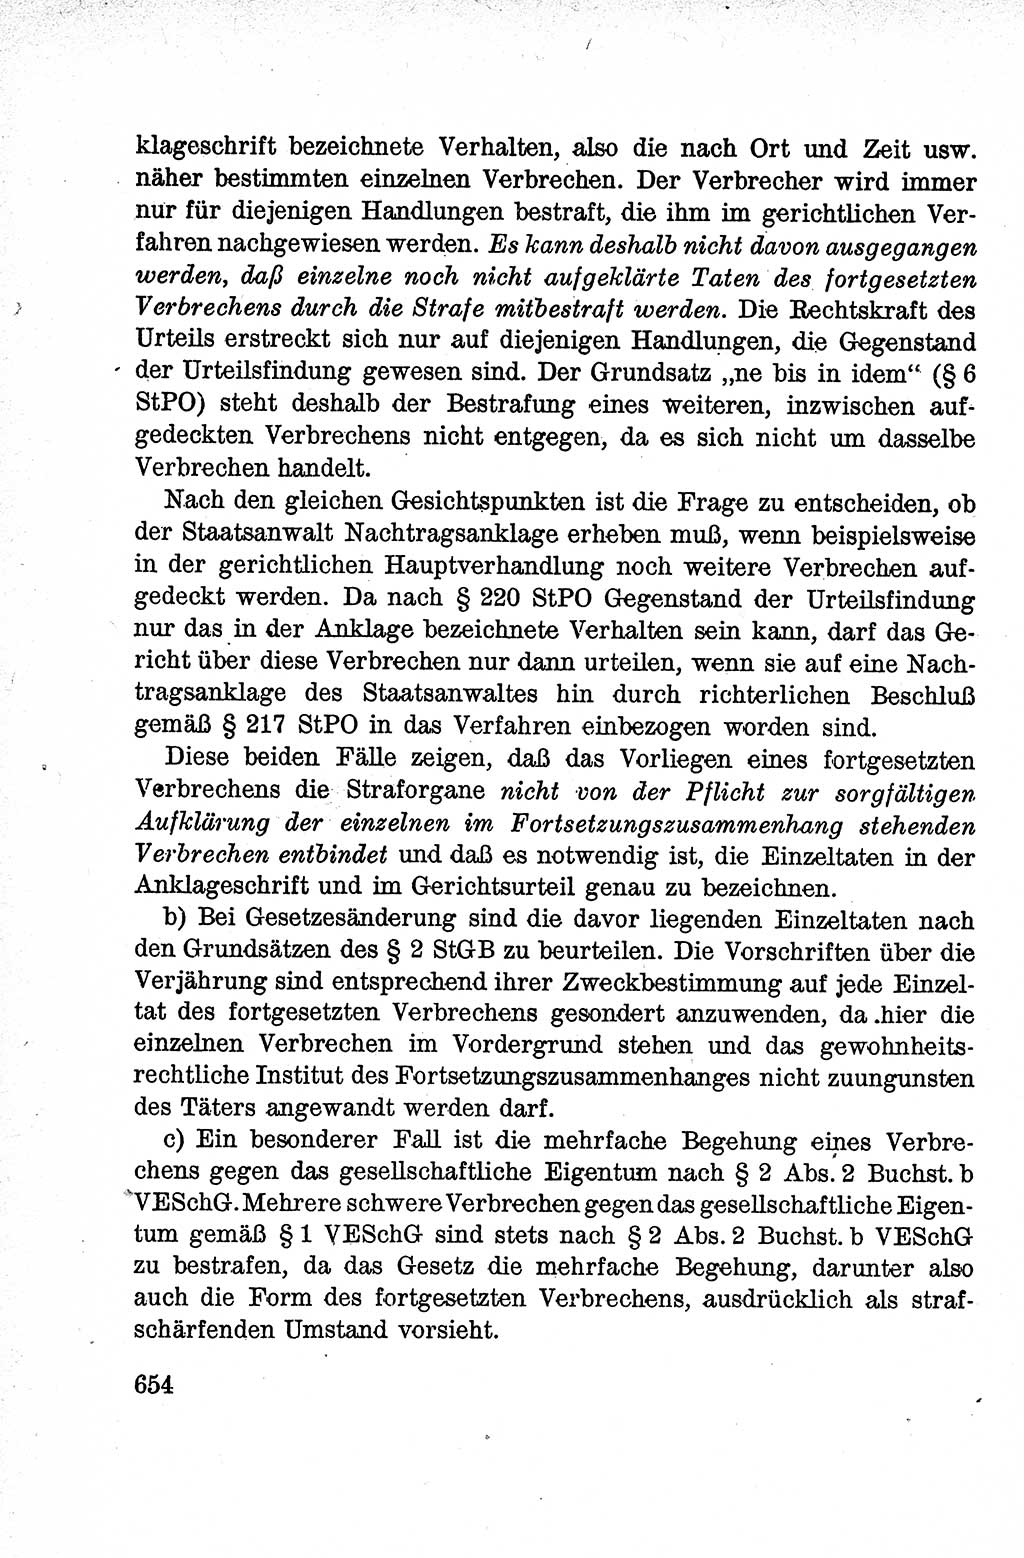 Lehrbuch des Strafrechts der Deutschen Demokratischen Republik (DDR), Allgemeiner Teil 1959, Seite 654 (Lb. Strafr. DDR AT 1959, S. 654)